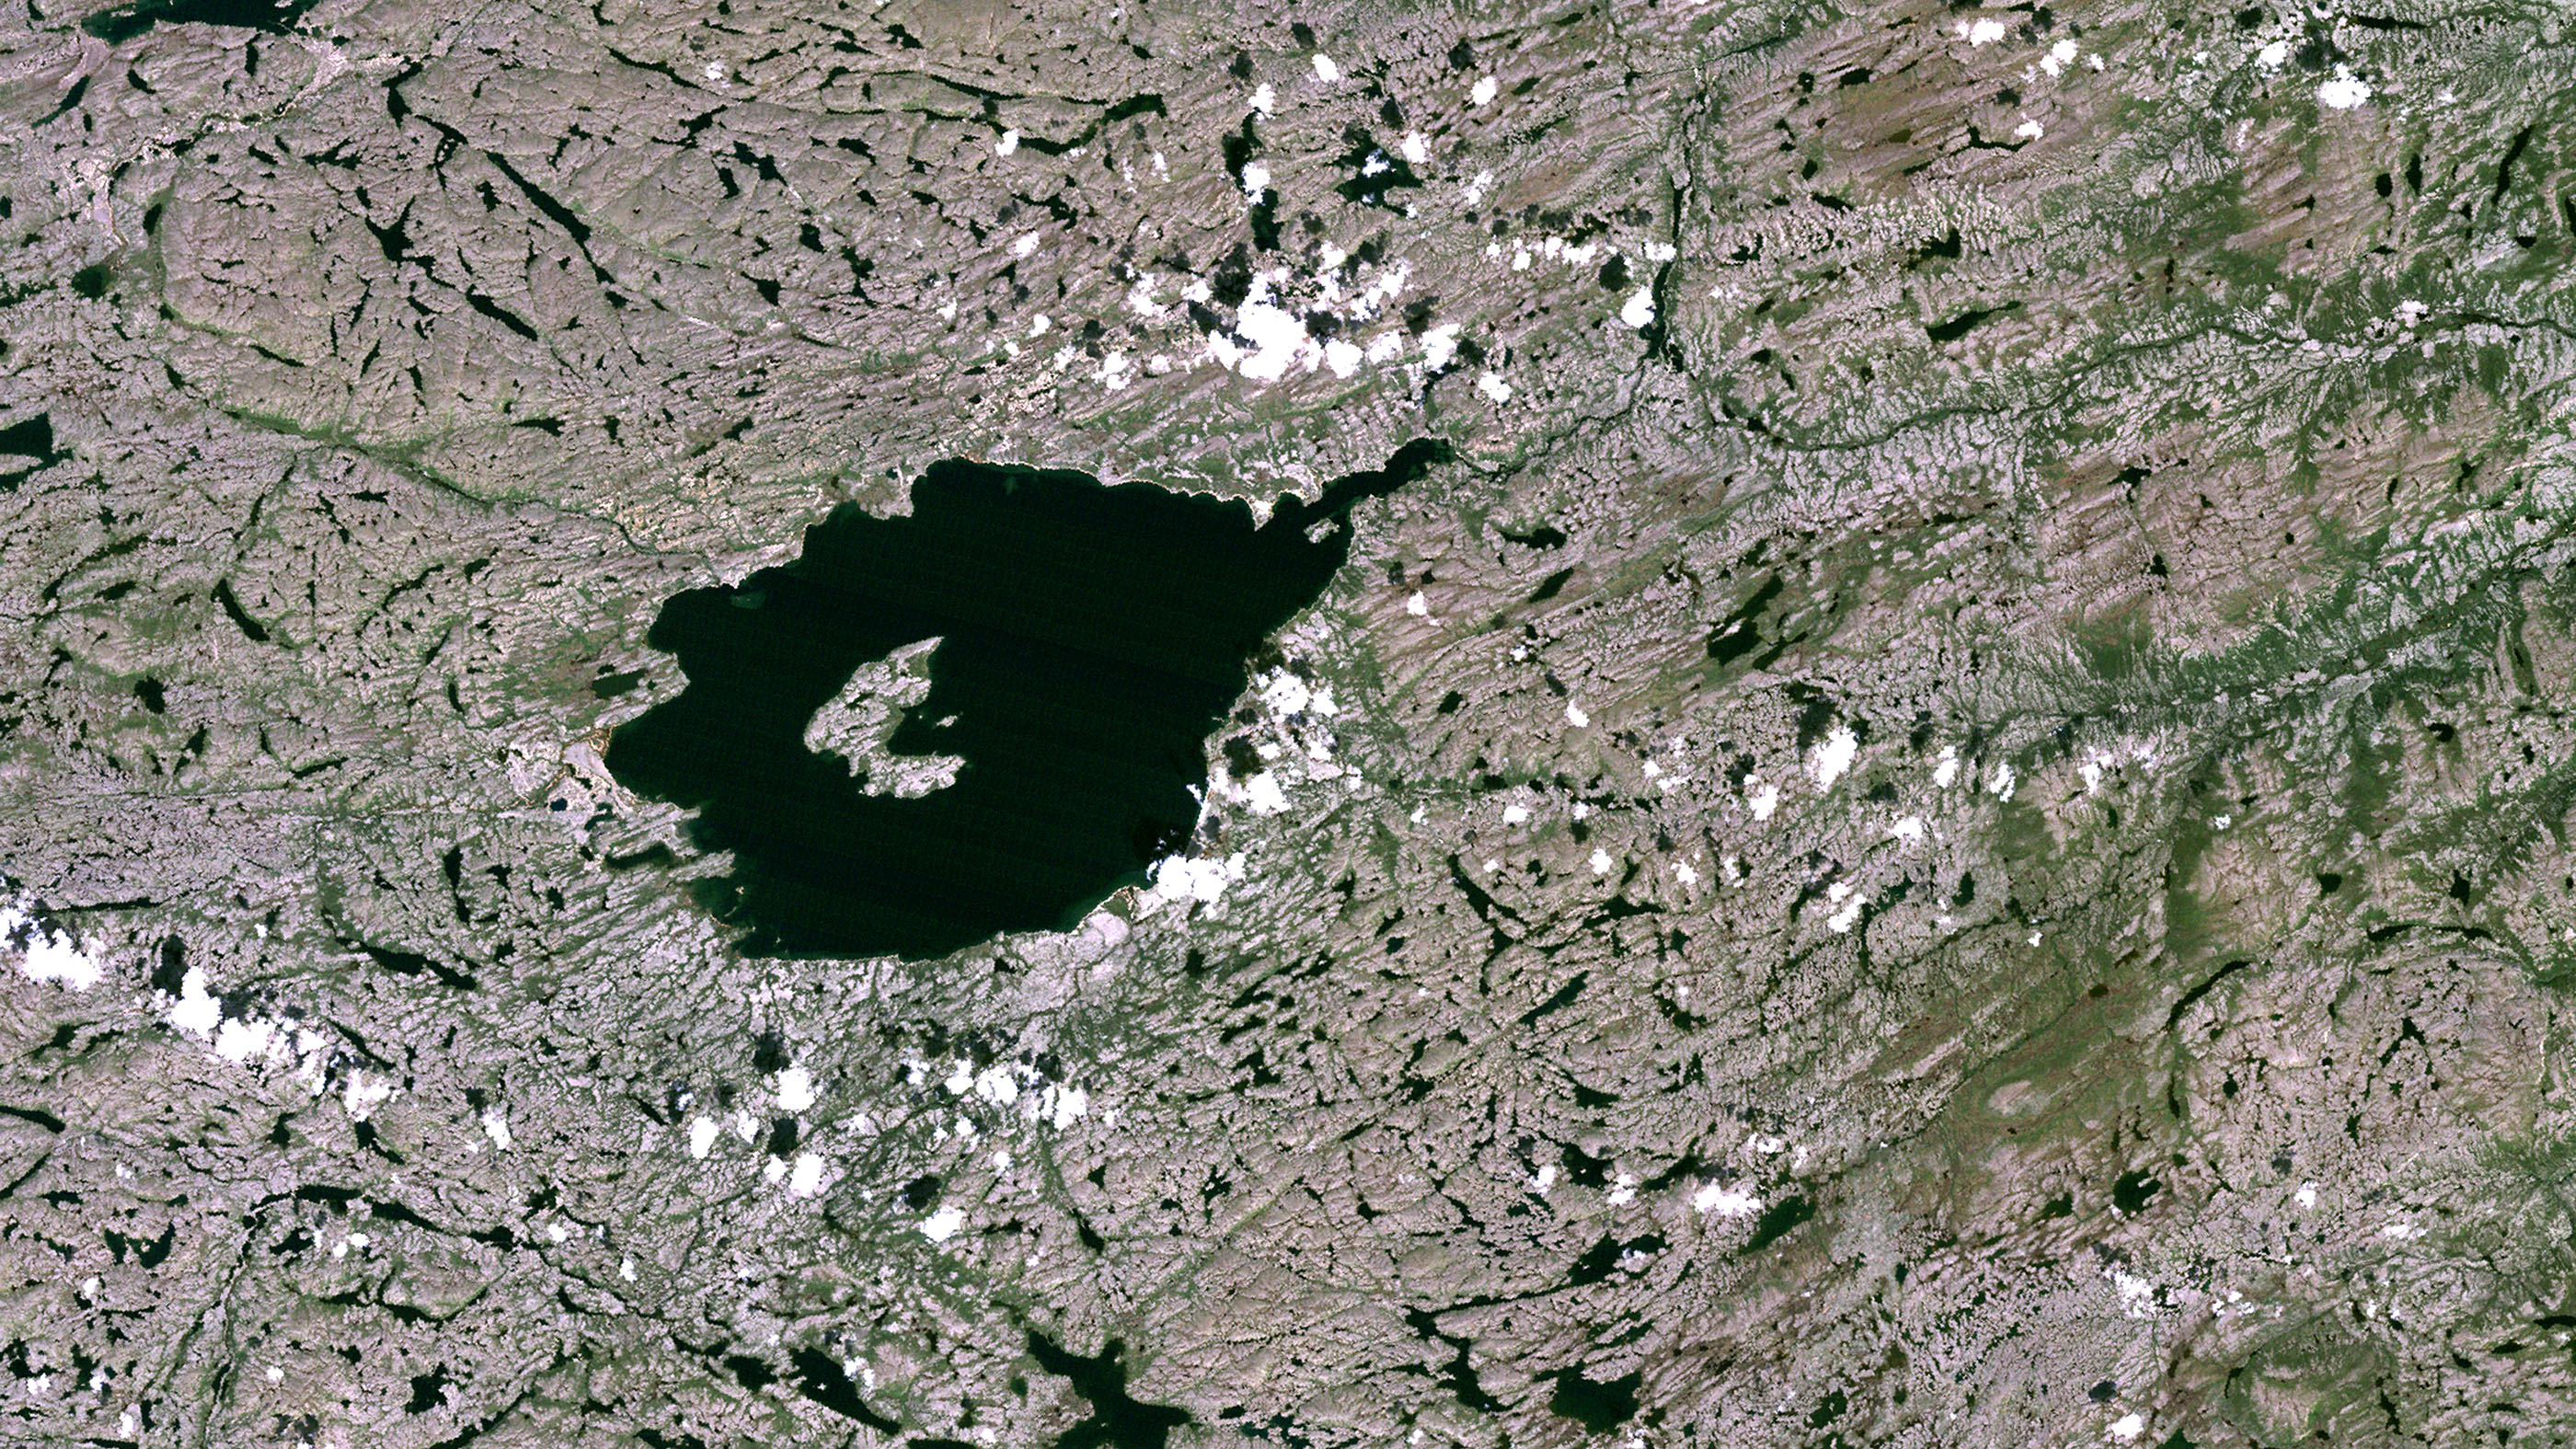 Skała została znaleziona w kraterze uderzeniowym Mistastin widocznym na zdjęciu satelitarnym. Źródło: Planet Observer/Universal Images Group via Getty Images